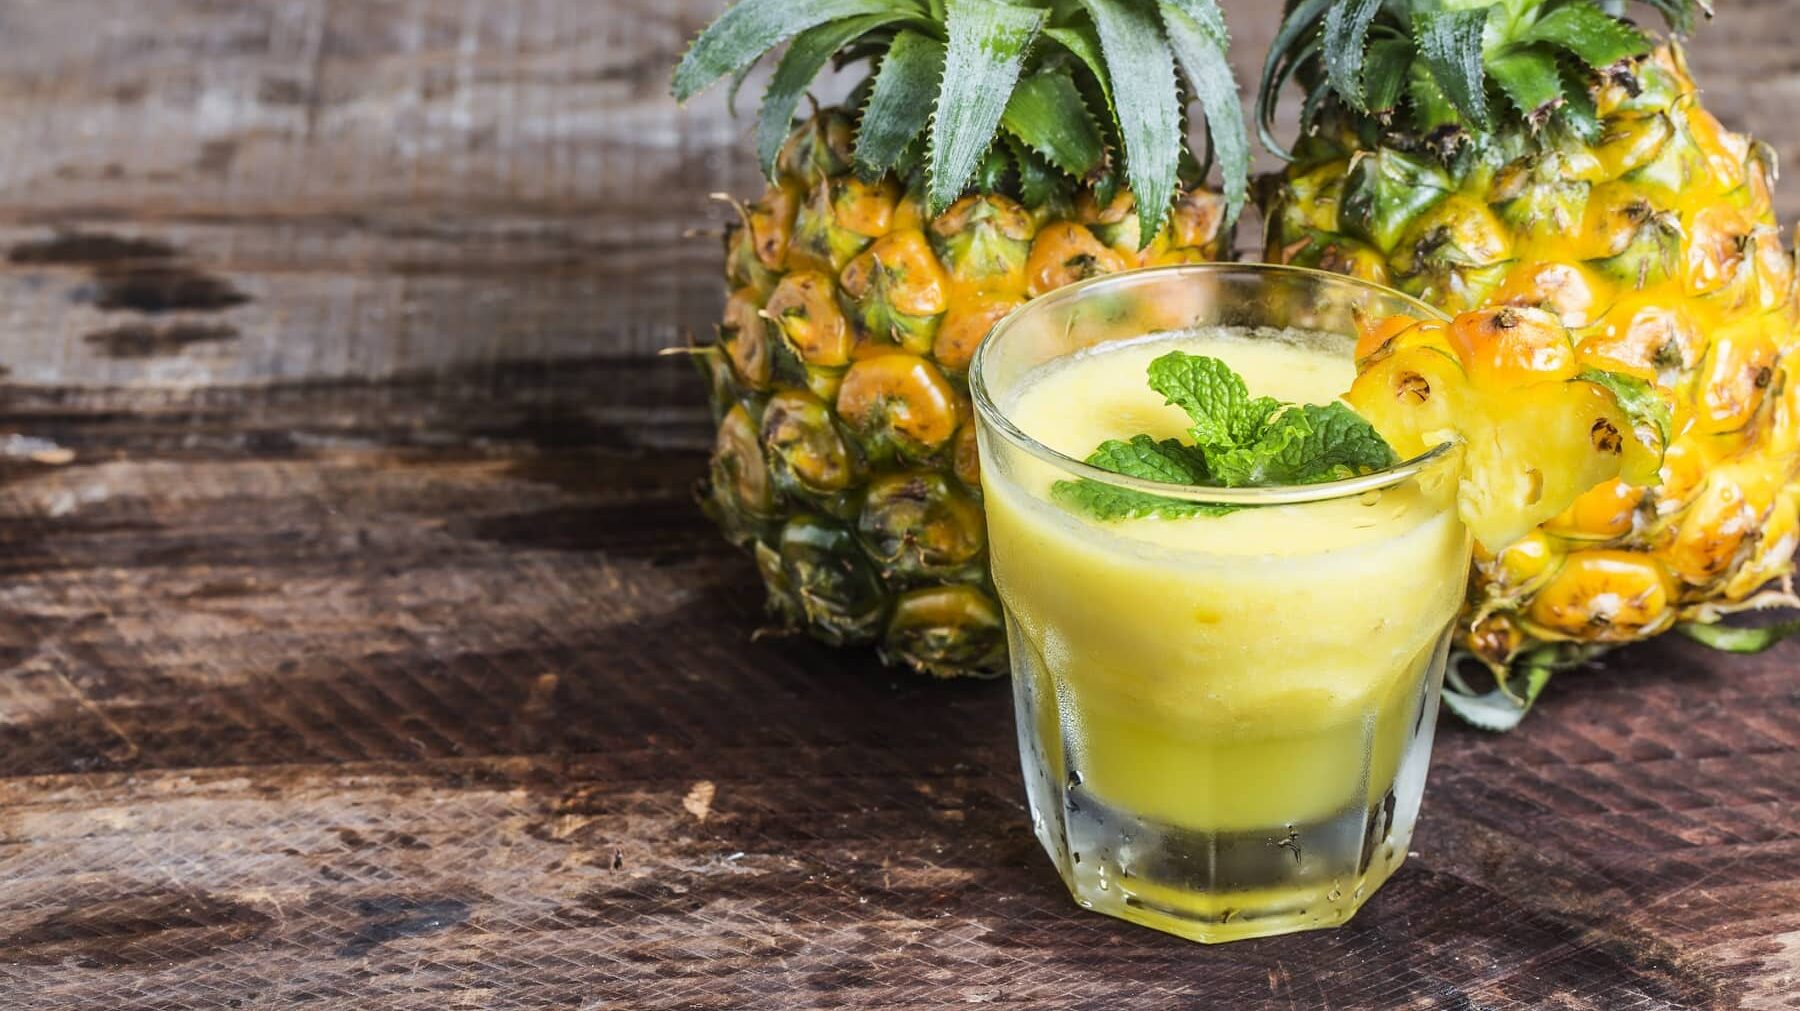 Ein Ananas-Smoothie in einem klekinen Glas steht auf einem Holztisch. Hinter dem Glas stehen zwei Ananasfrüchte. Der Smoothie ist angerichtet mit einer Scheibe Ananas und etwas Minze.